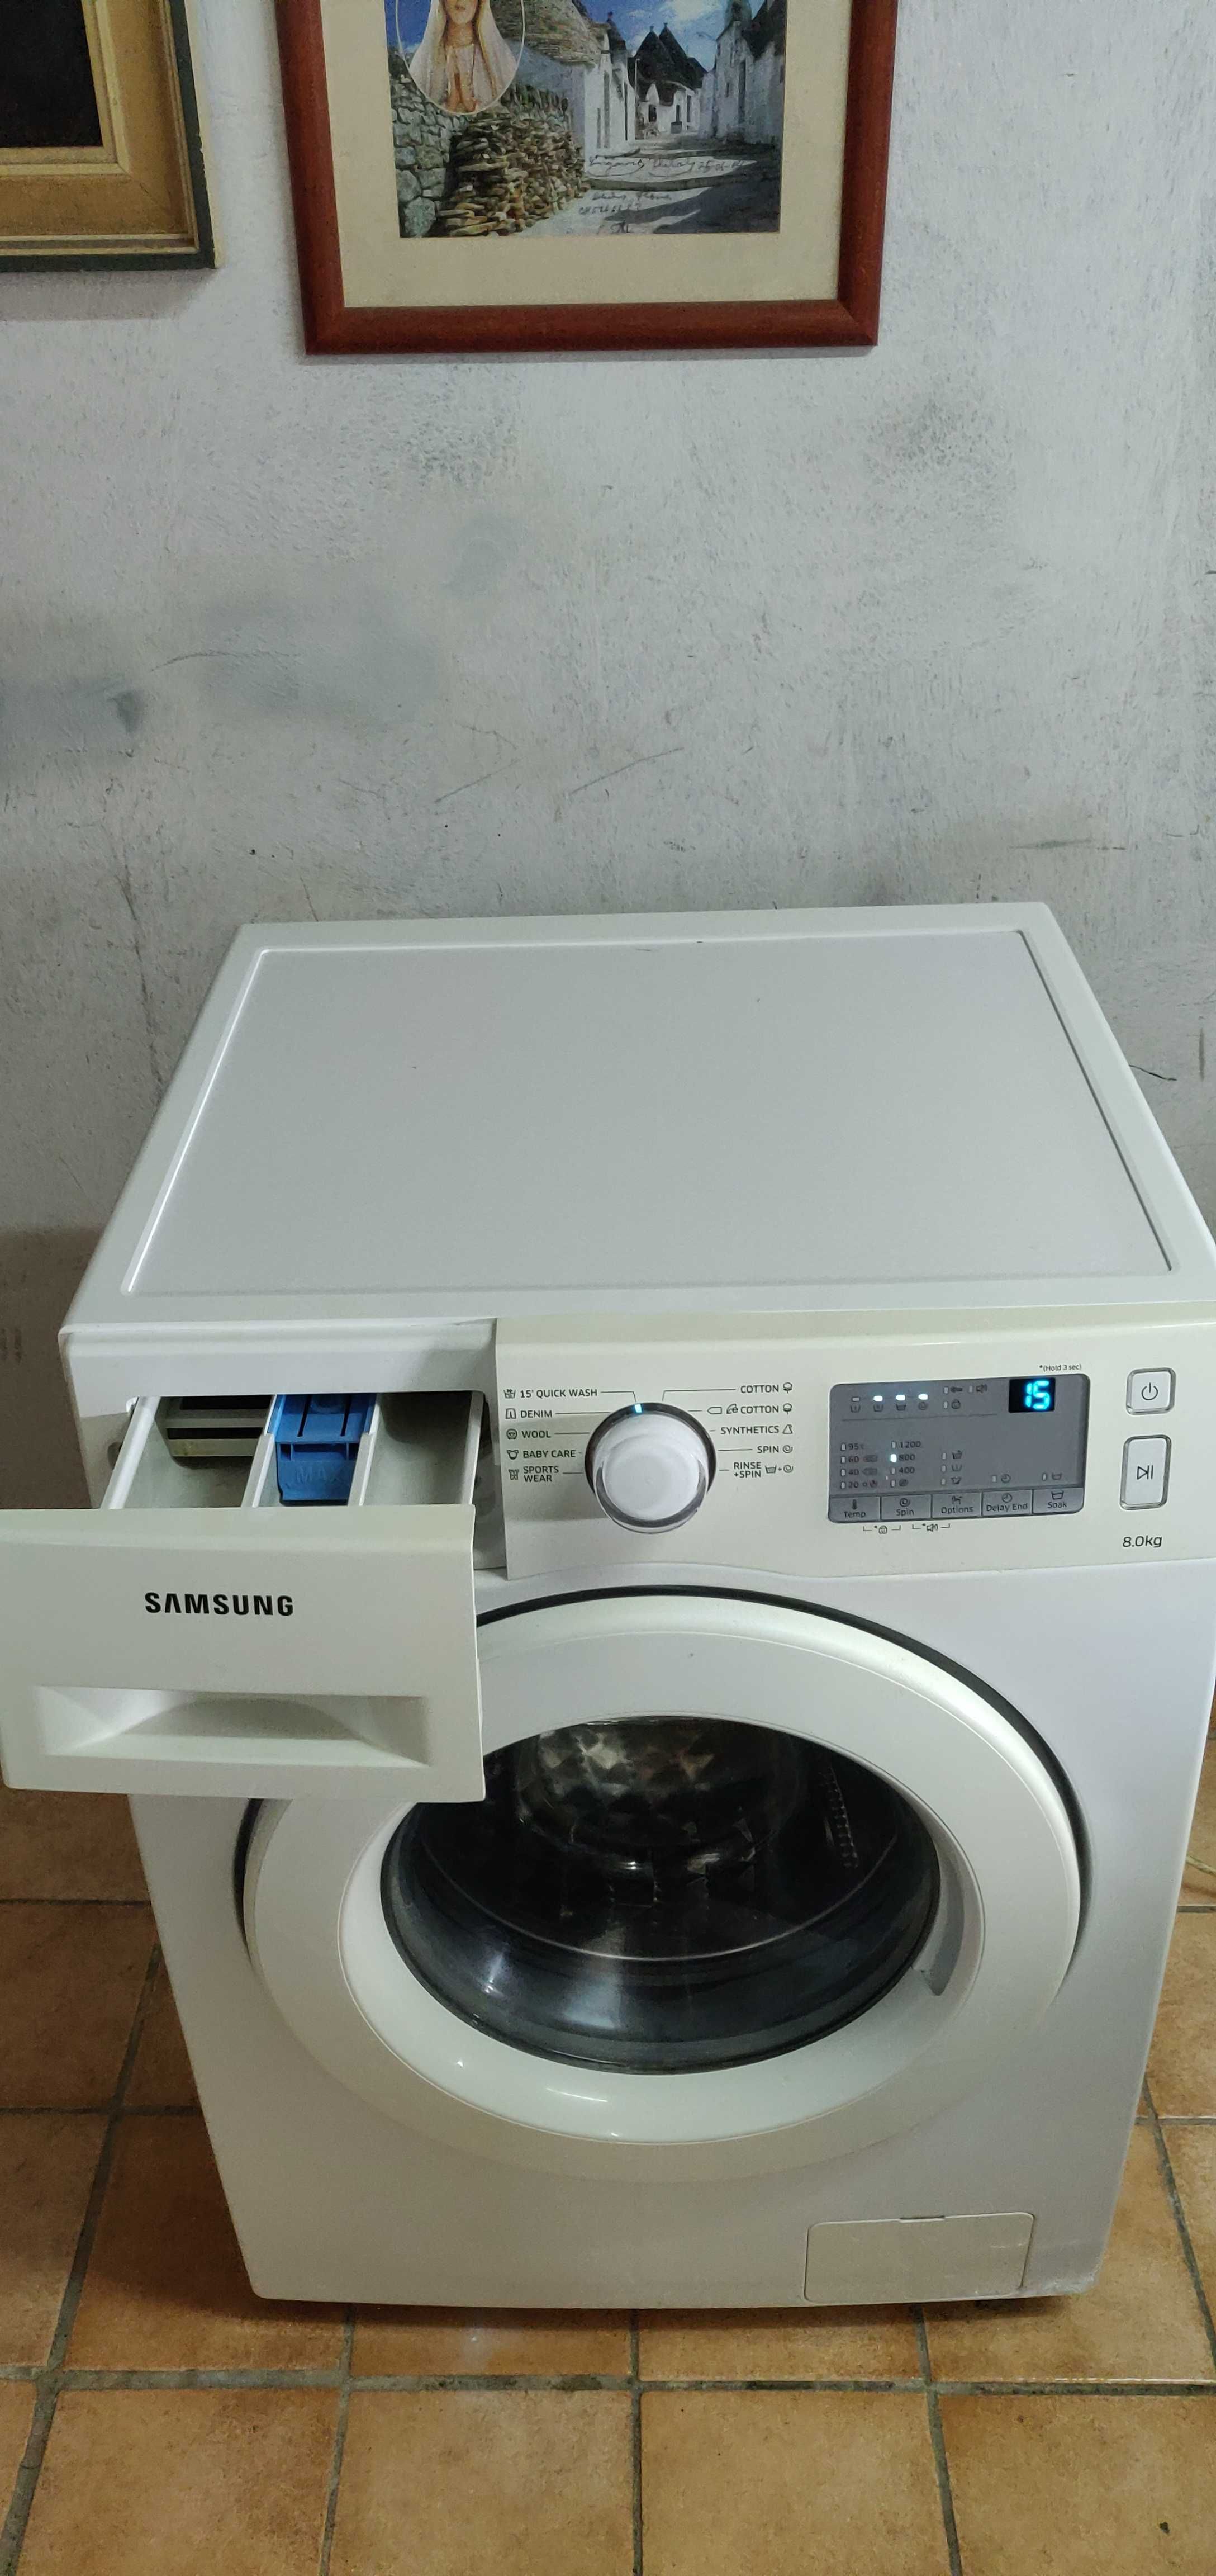 Masina de spalat rufe Samsung de 8-kg